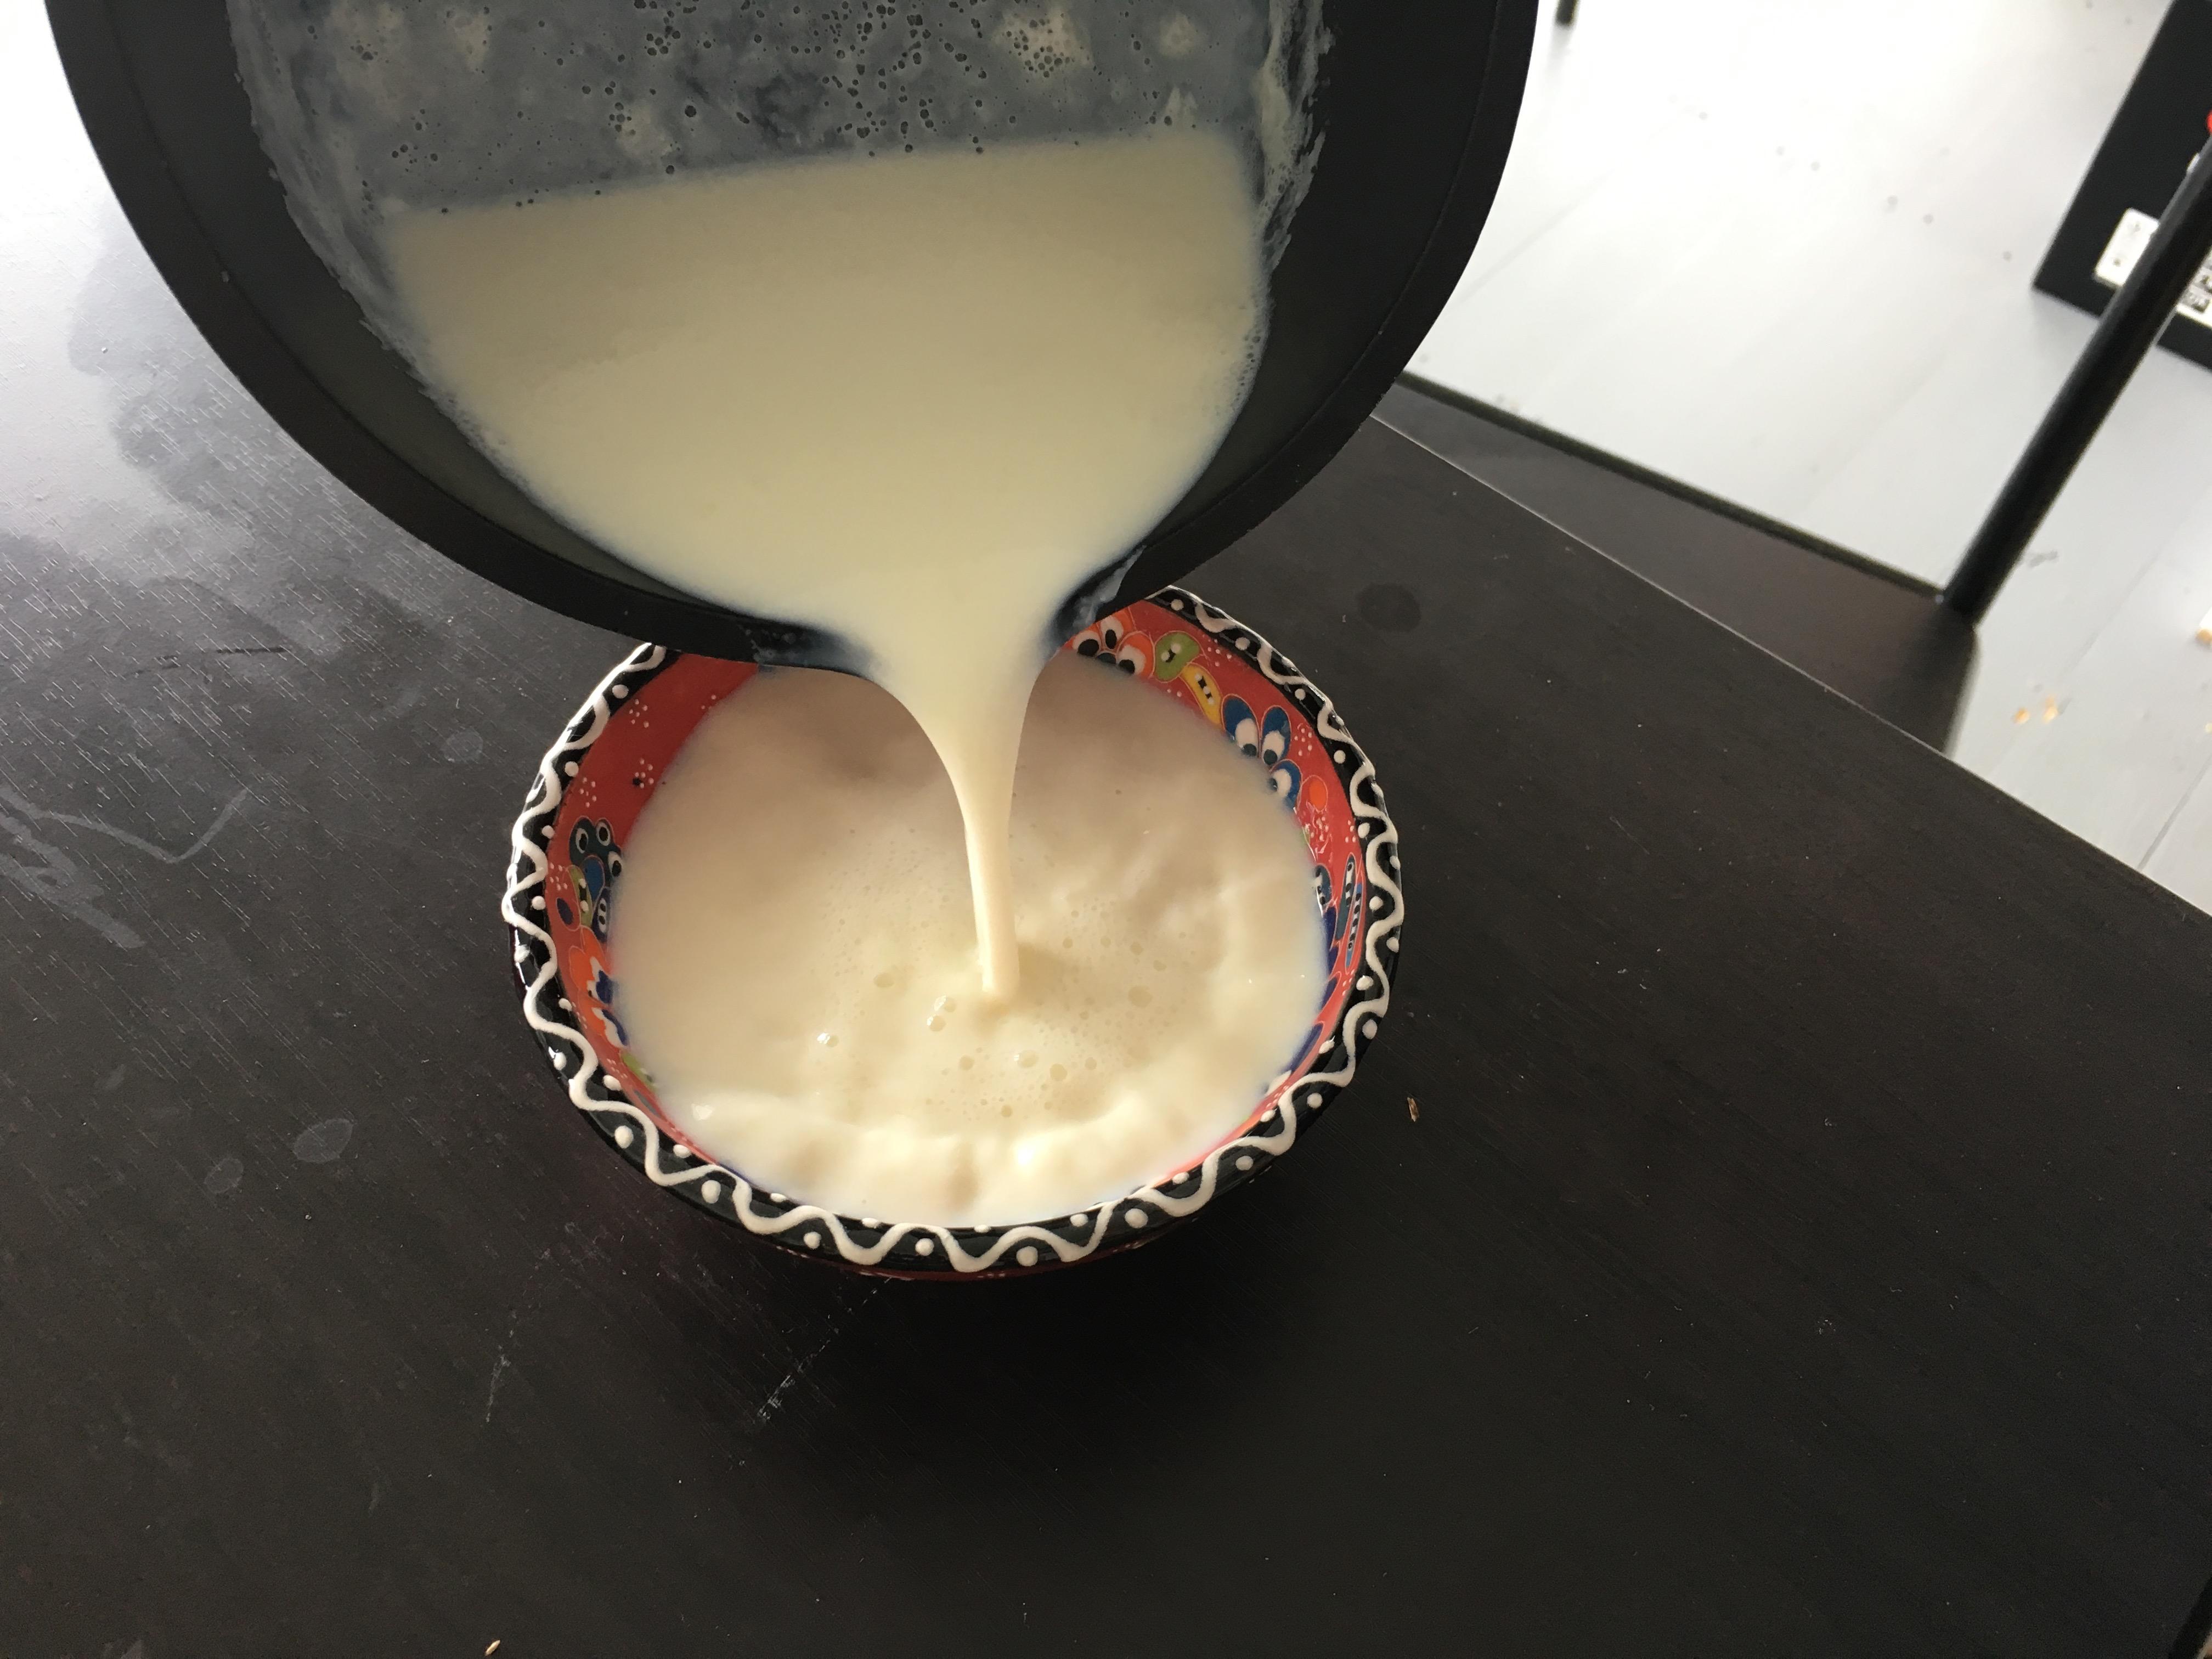 姜汁撞奶怎么做_姜汁撞奶的做法_豆果美食